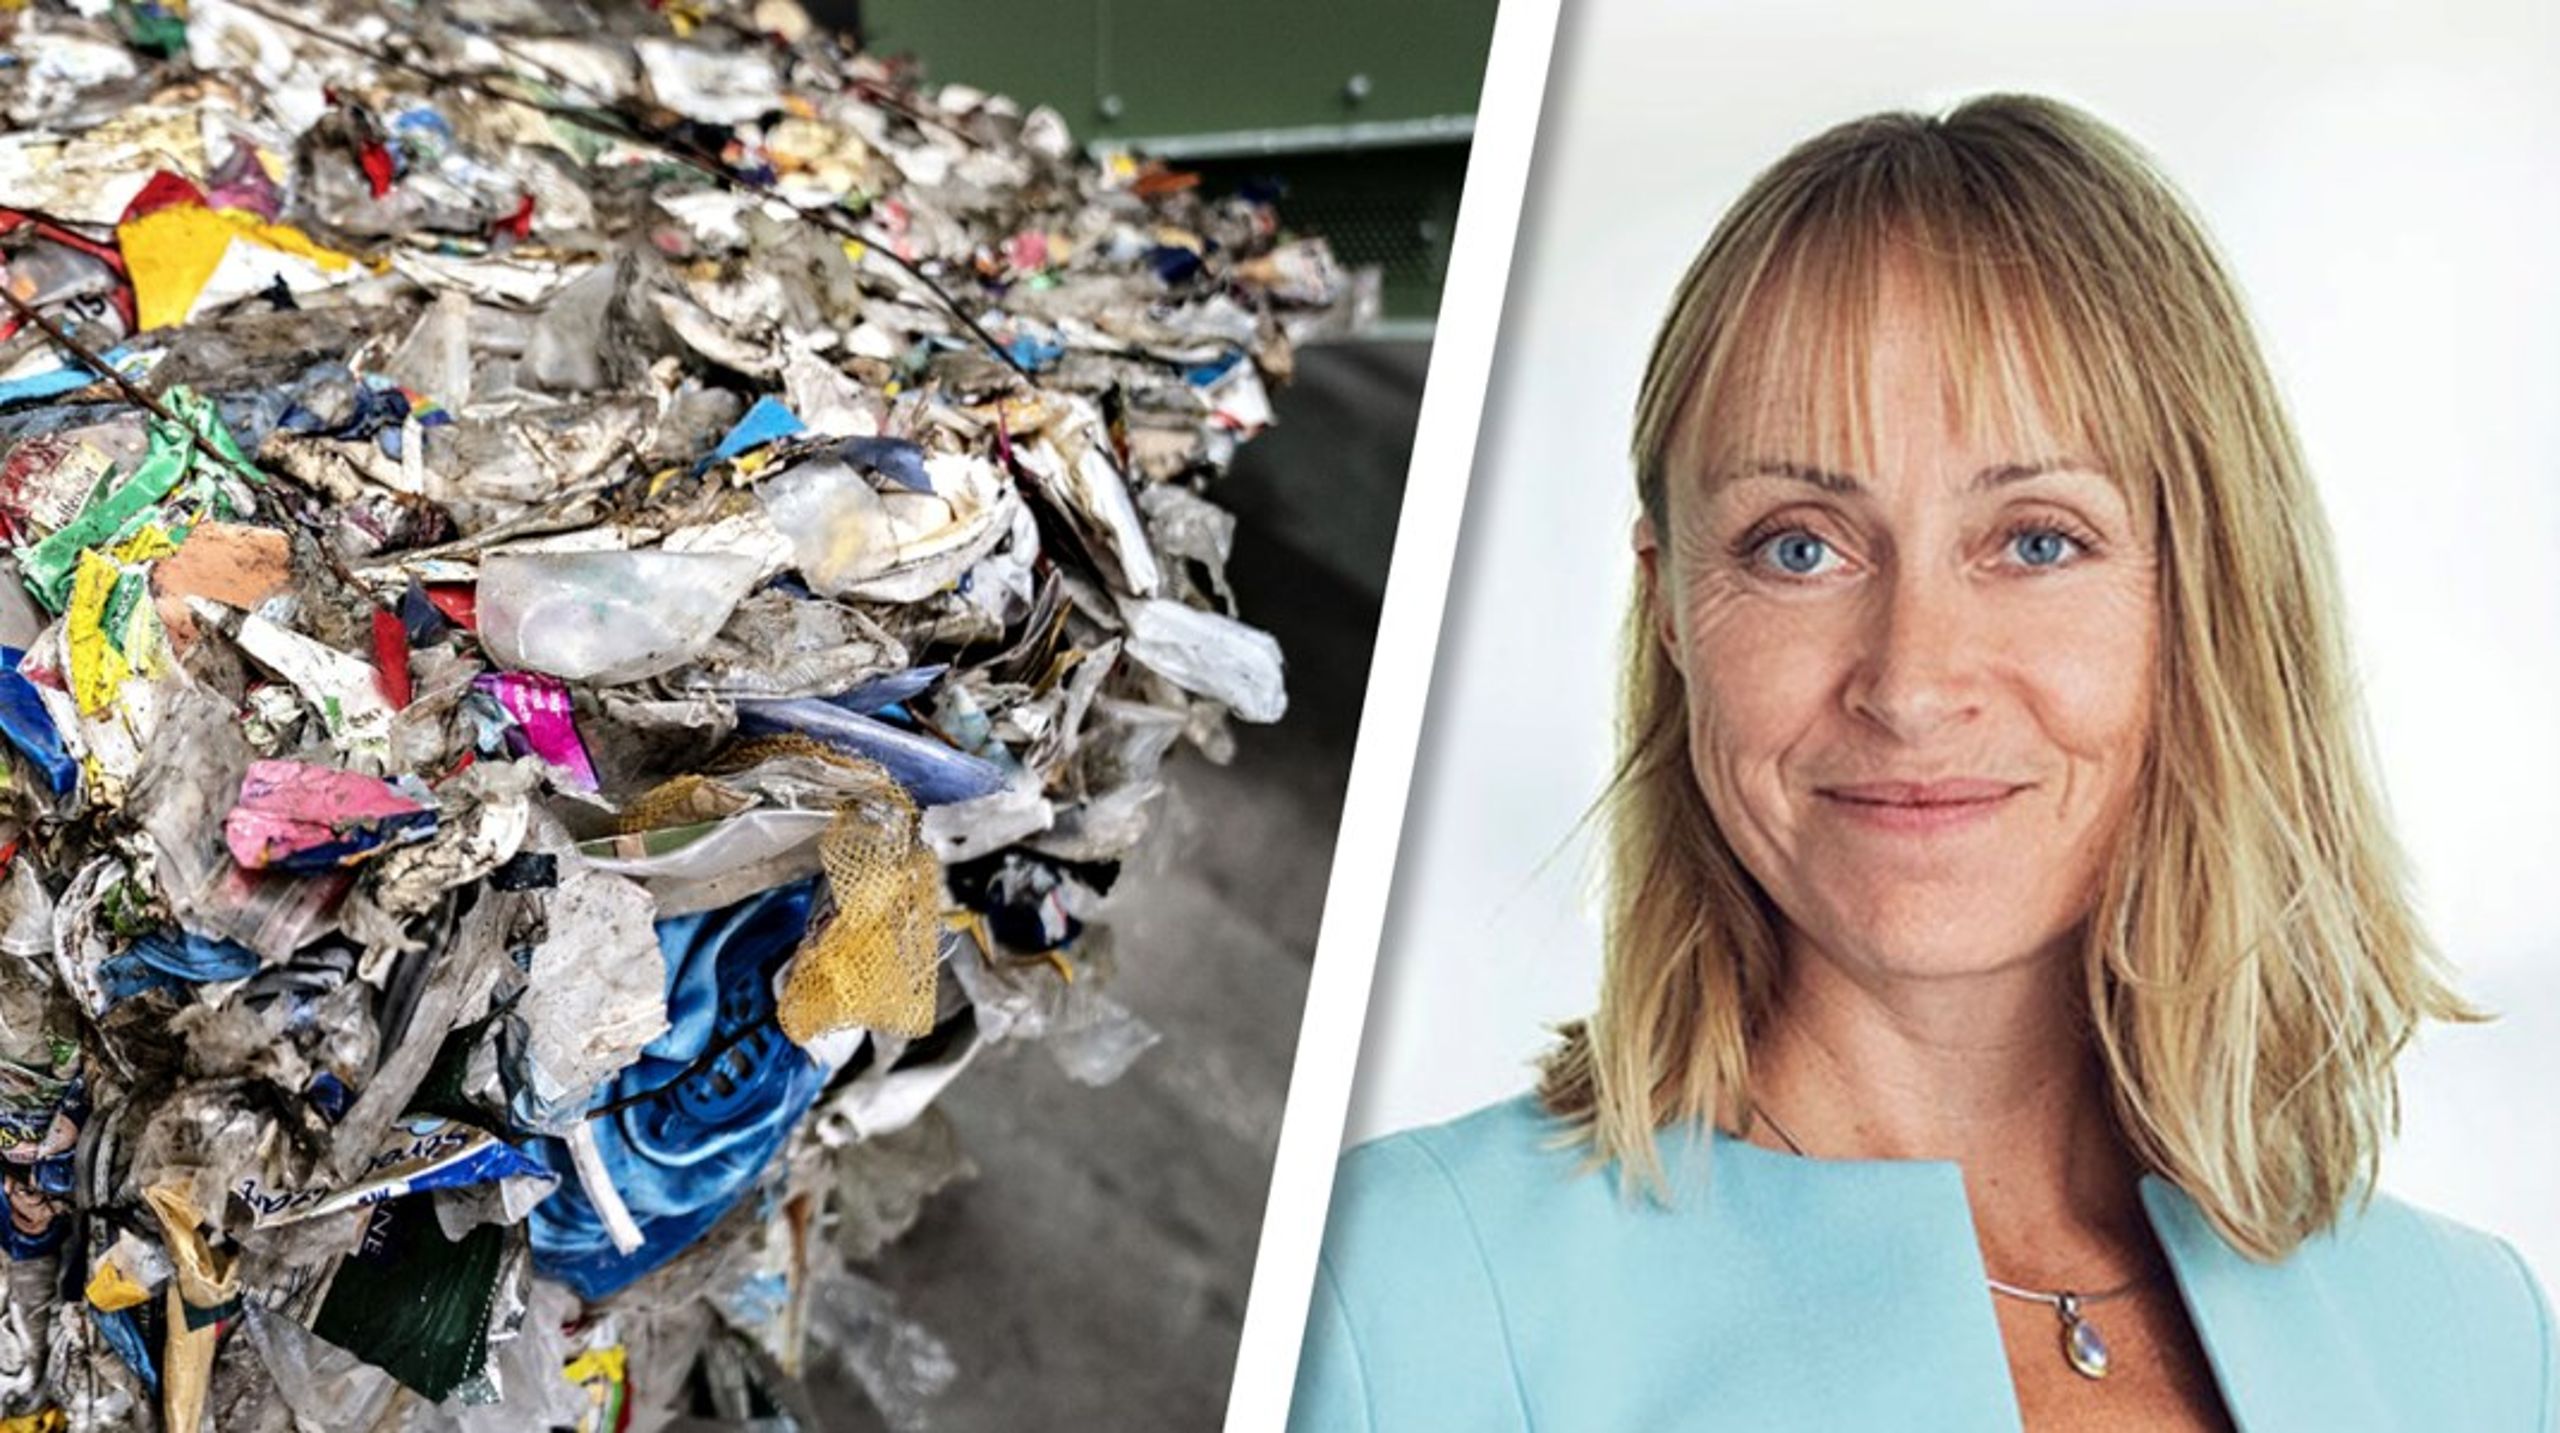 Flere mindre danske virksomheder har&nbsp;innovative forretningsmodeller, der bidrager til genanvendelse og minimeret materialeforbrug, som kan eksporteres til andre markeder, skriver&nbsp;Katrine Paaby Joensen.